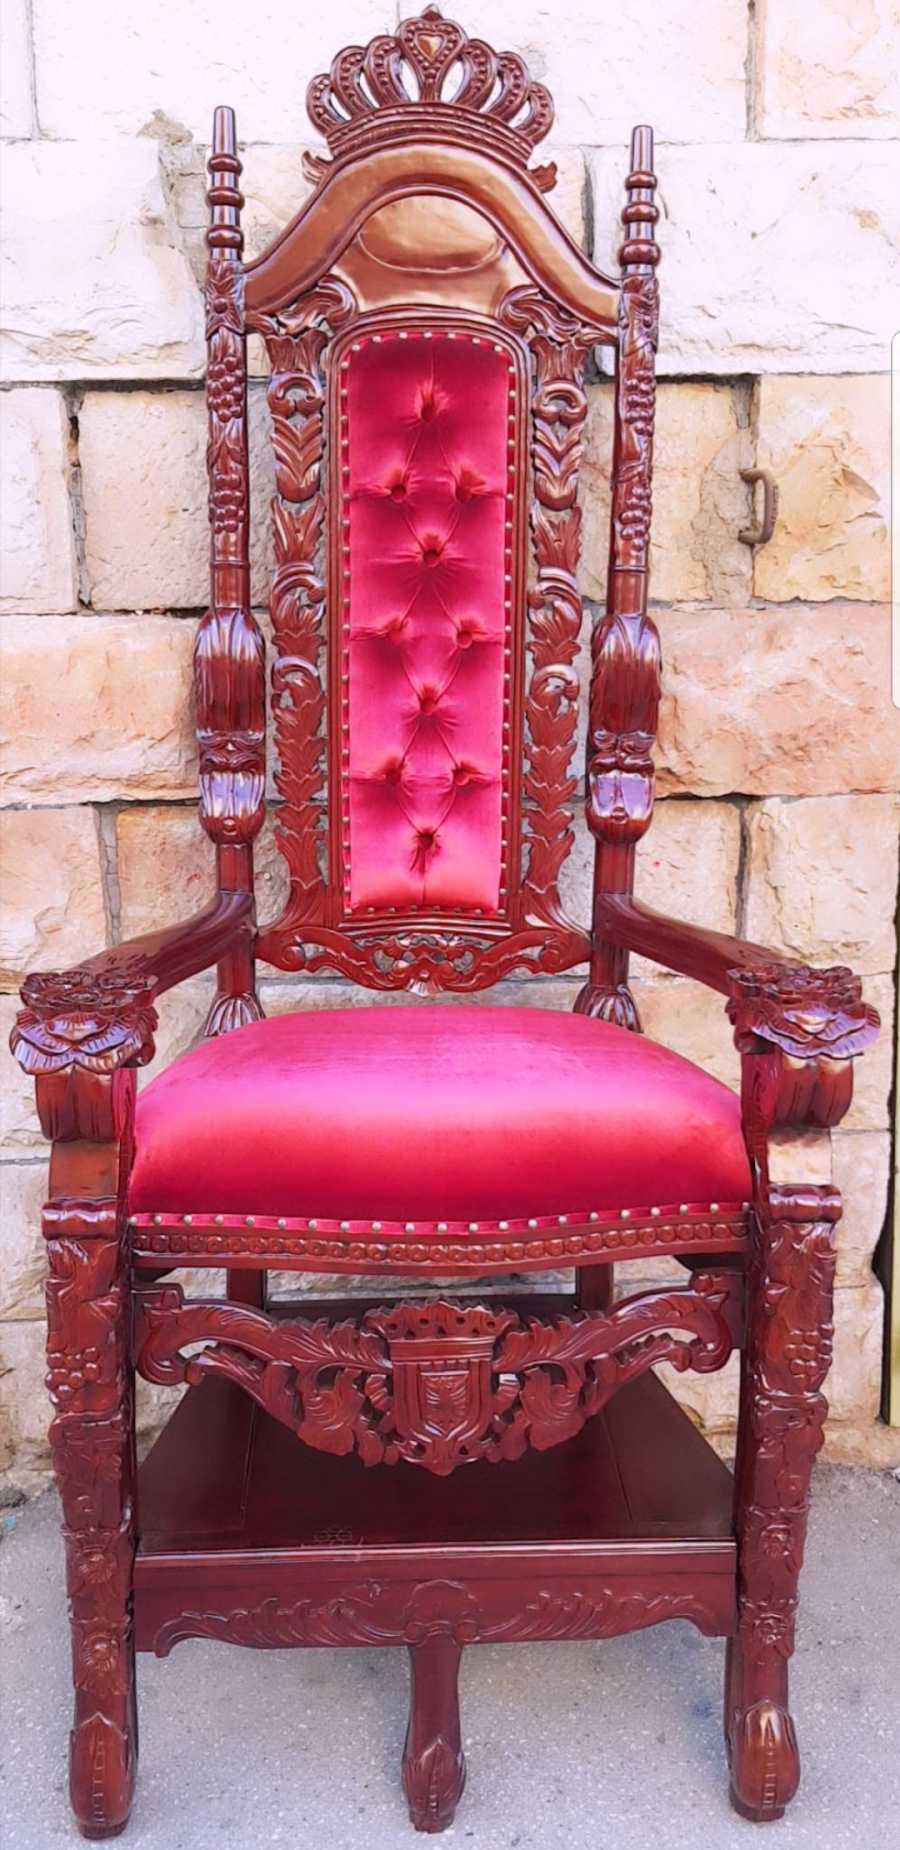 כיסא אליהו הנביא